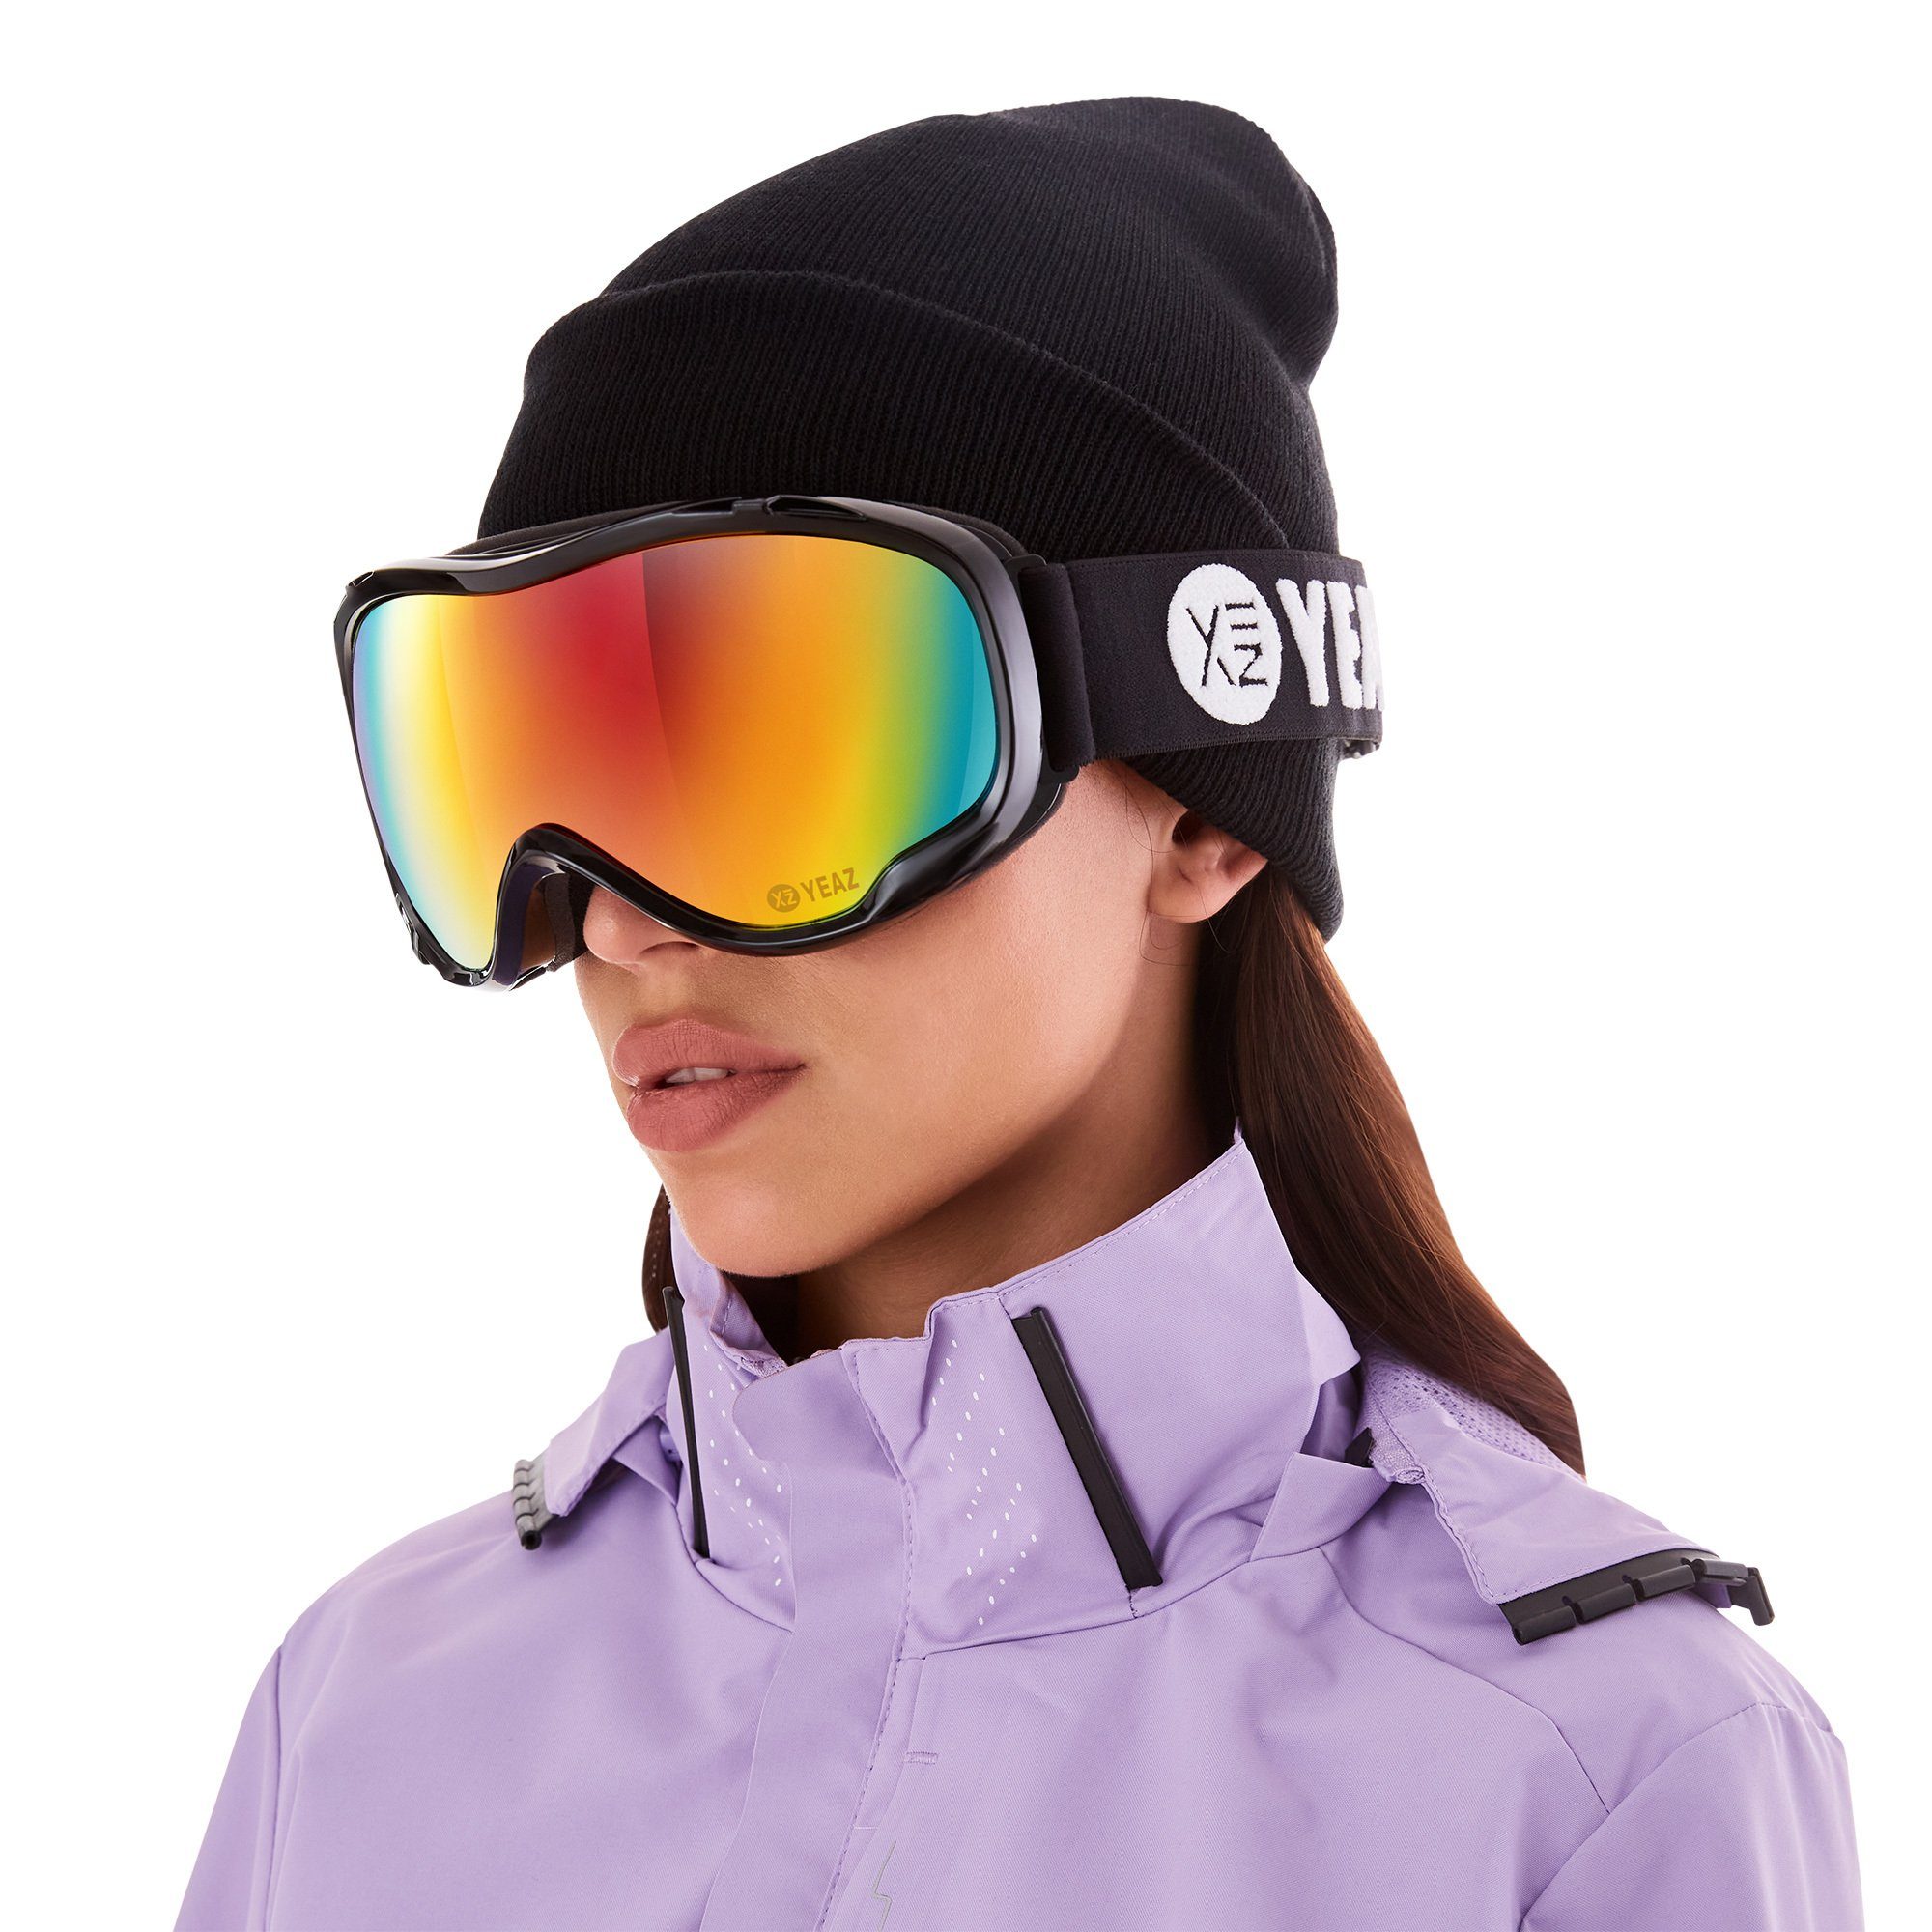 YEAZ Skibrille CLIFF ski- und snowboardbrille Erwachsene für Jugendliche und Snowboardbrille schwarz, Premium-Ski